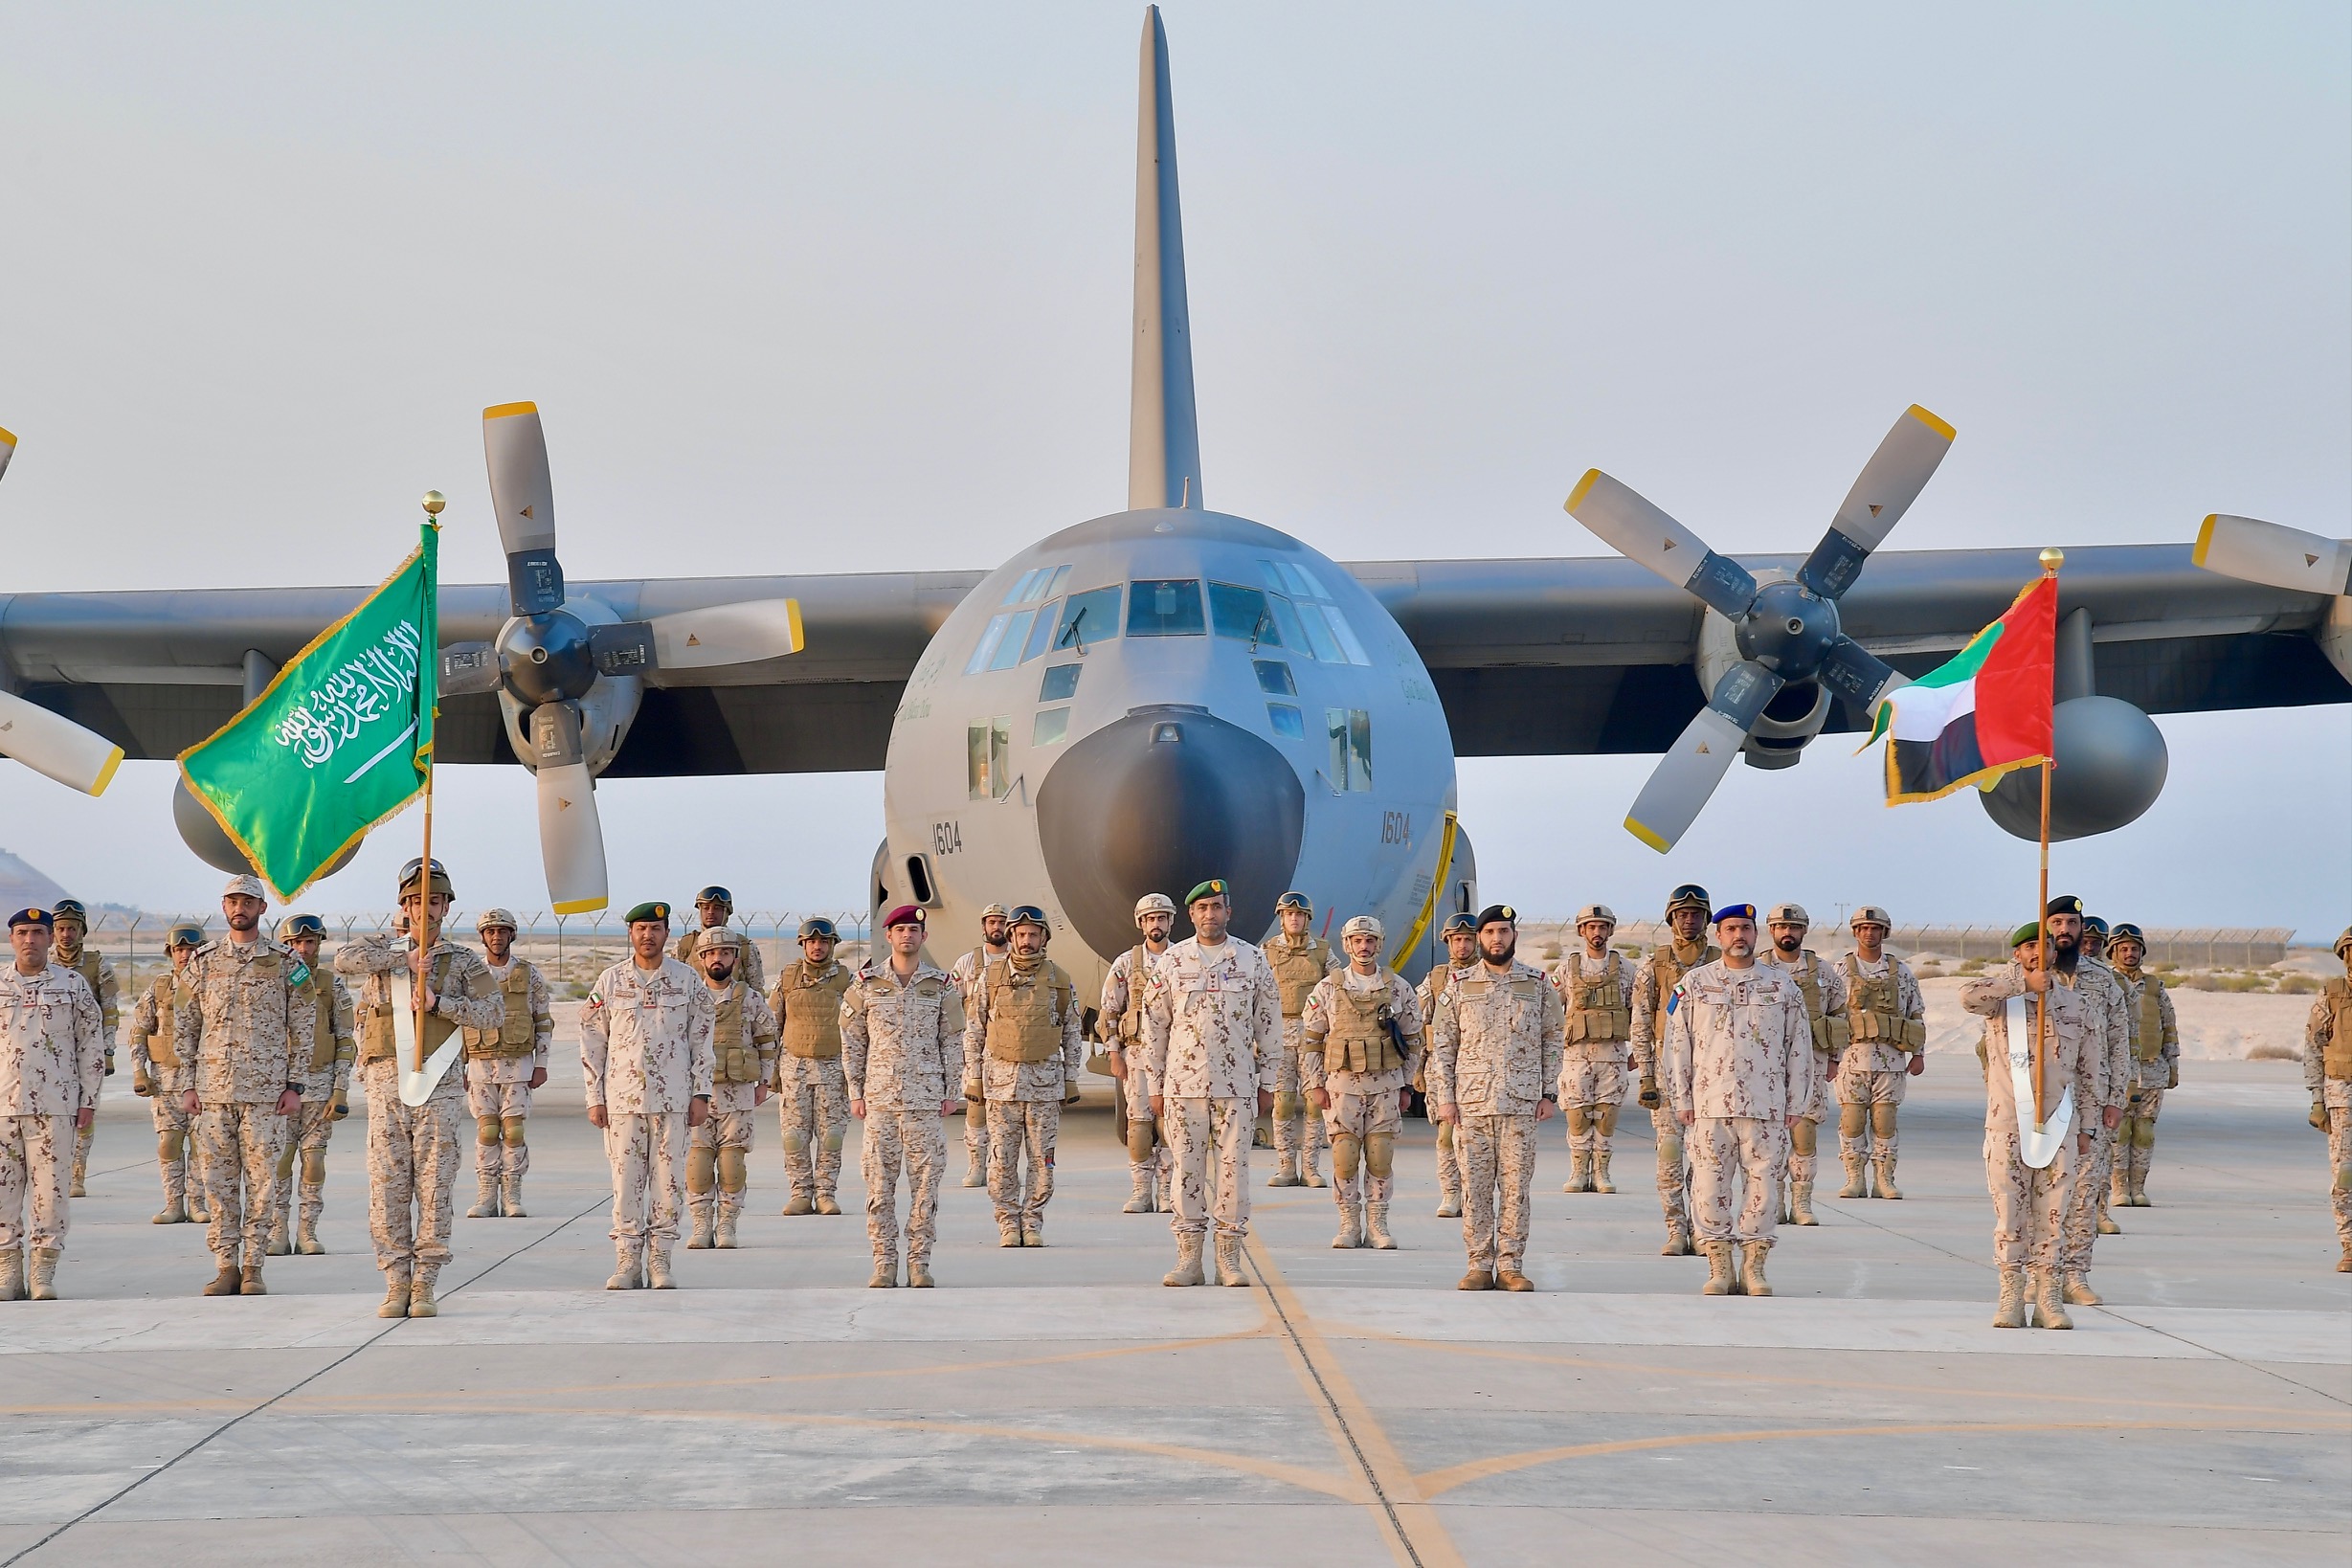 وصول القوات البرية الملكية السعودية المشاركة في تمرين "المصير واحد/1" مع القوات البرية الإماراتية